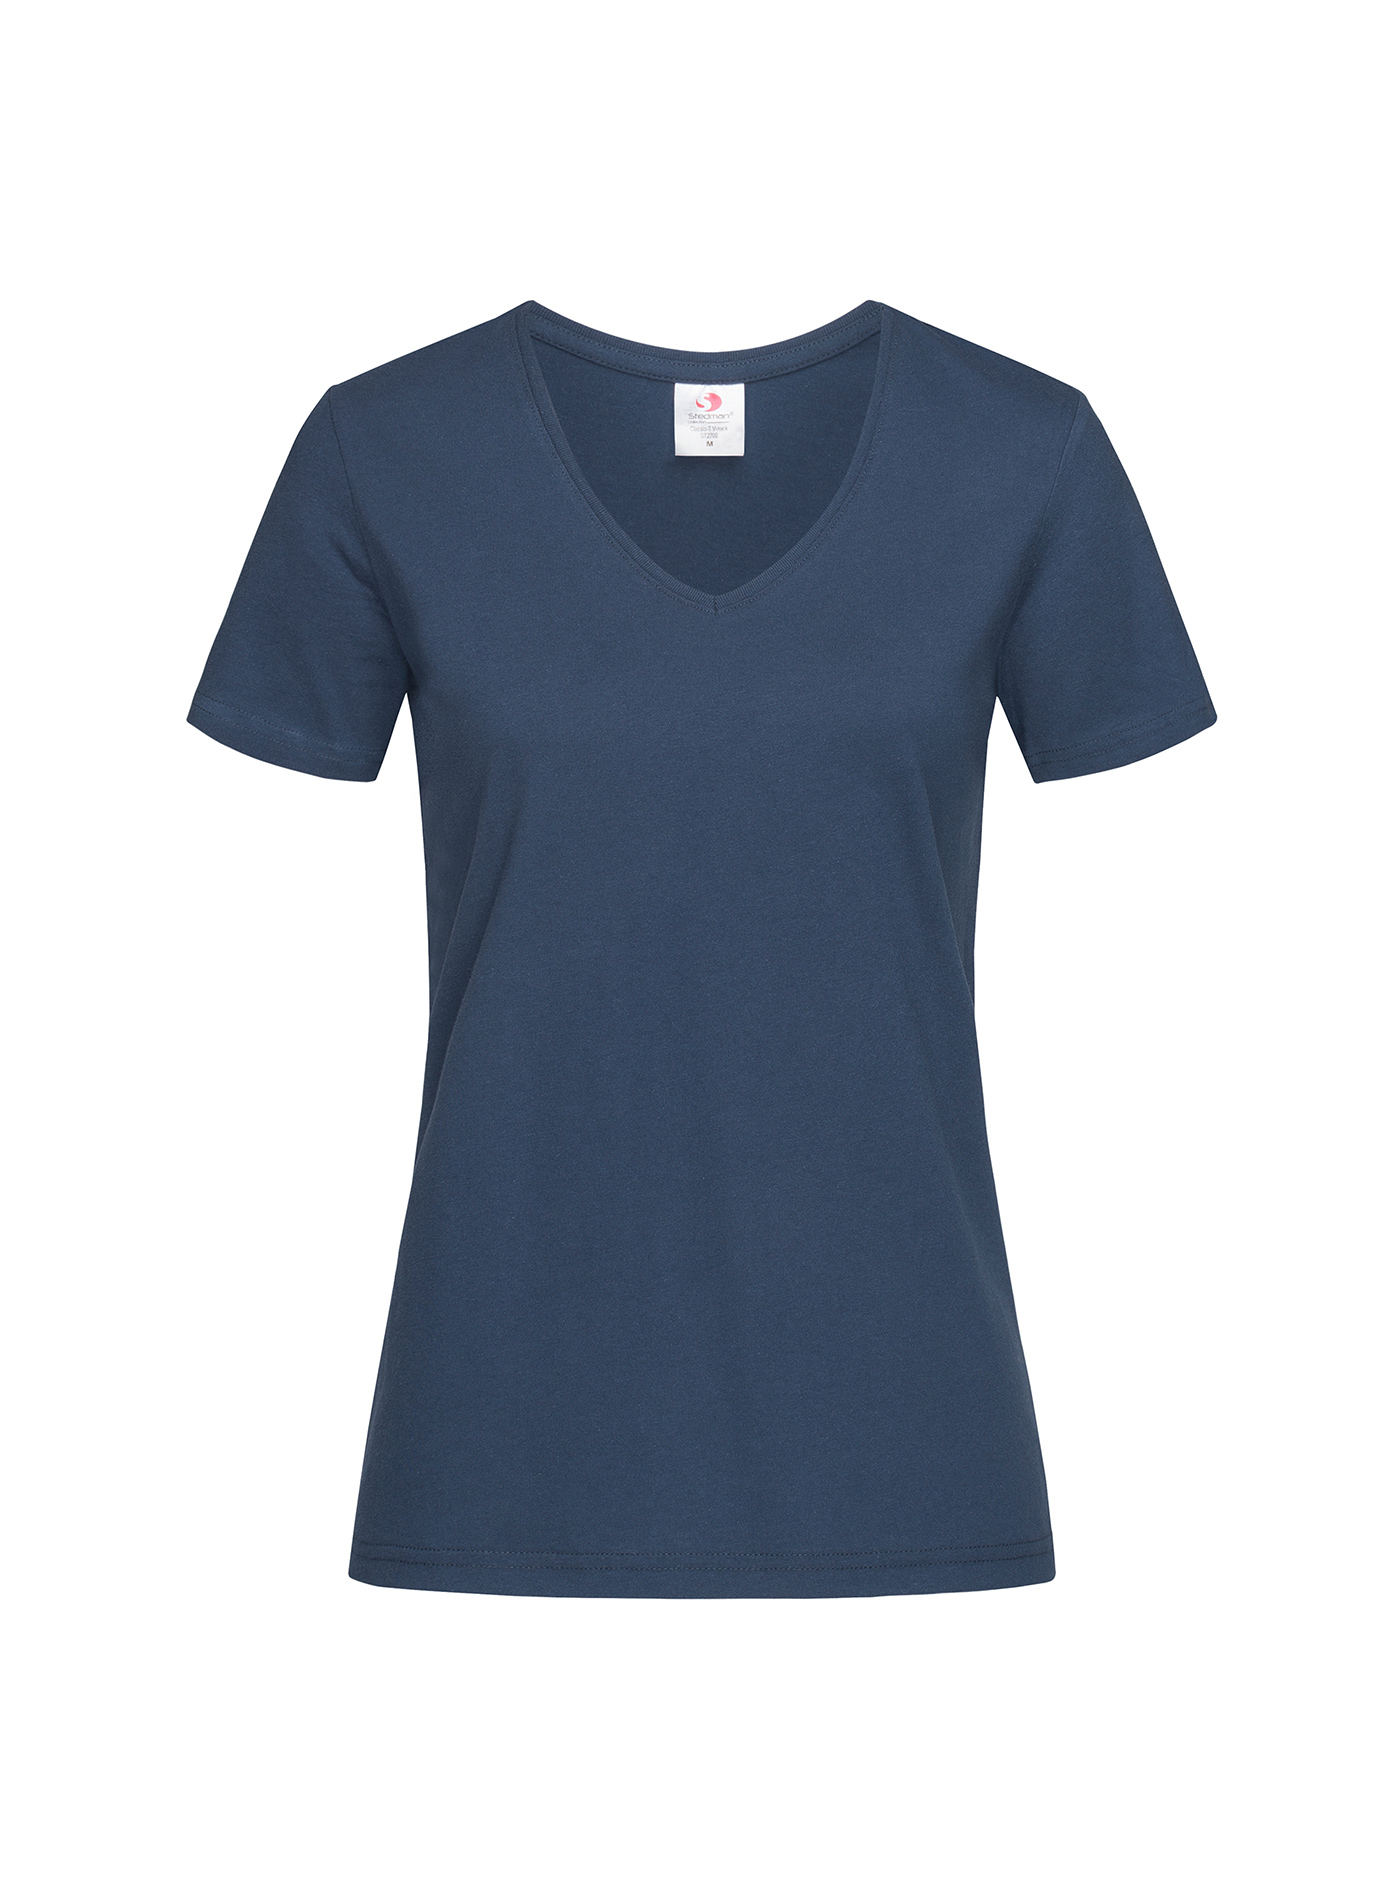 Dámské tričko s V-výstřihem Stedman - Námořnická modrá M